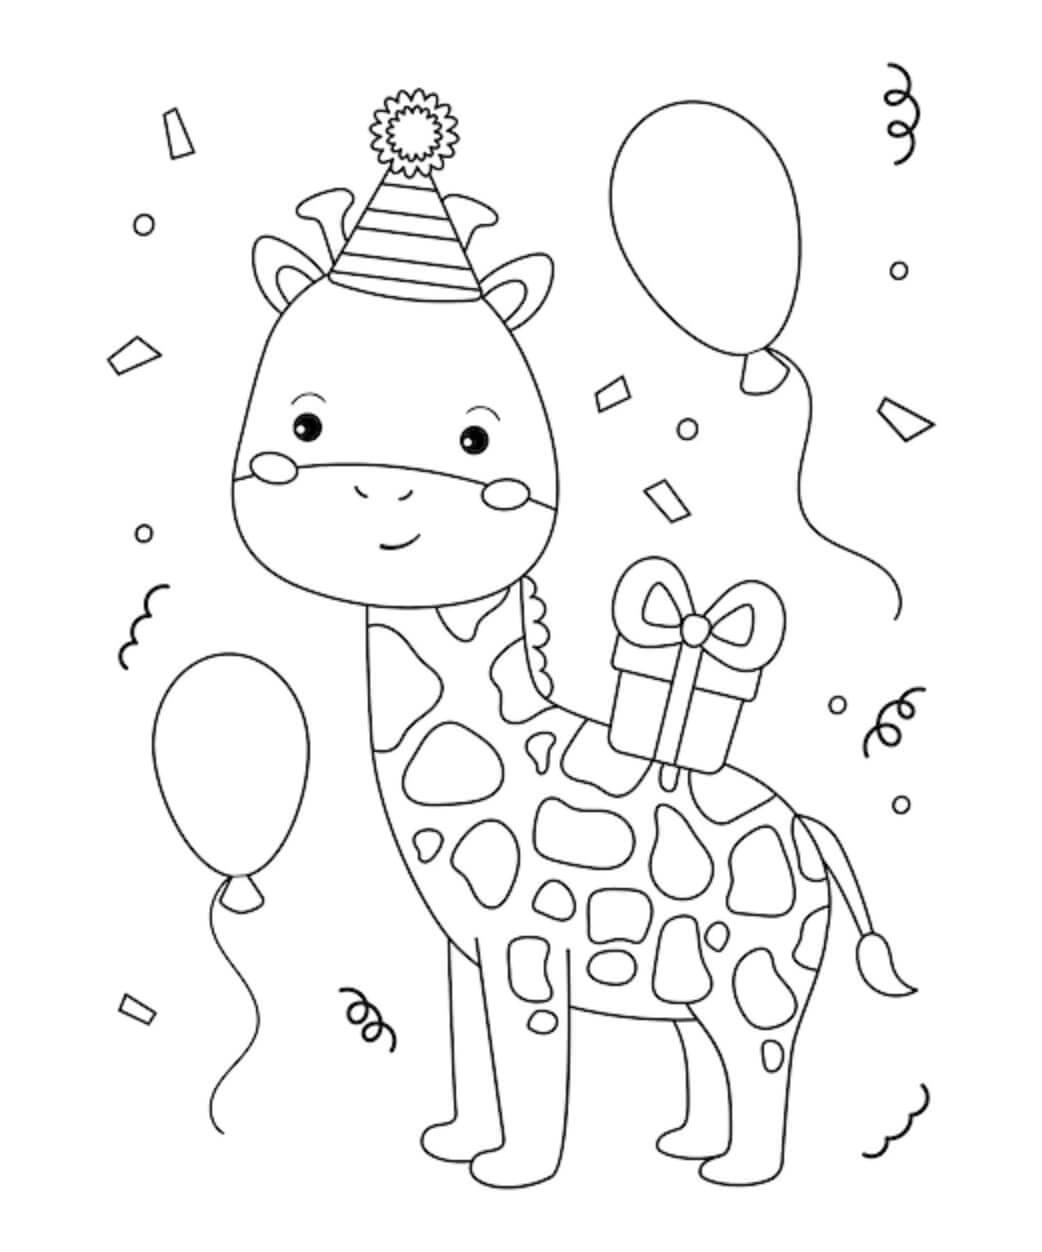 Giraffe alles Gute zum Geburtstag